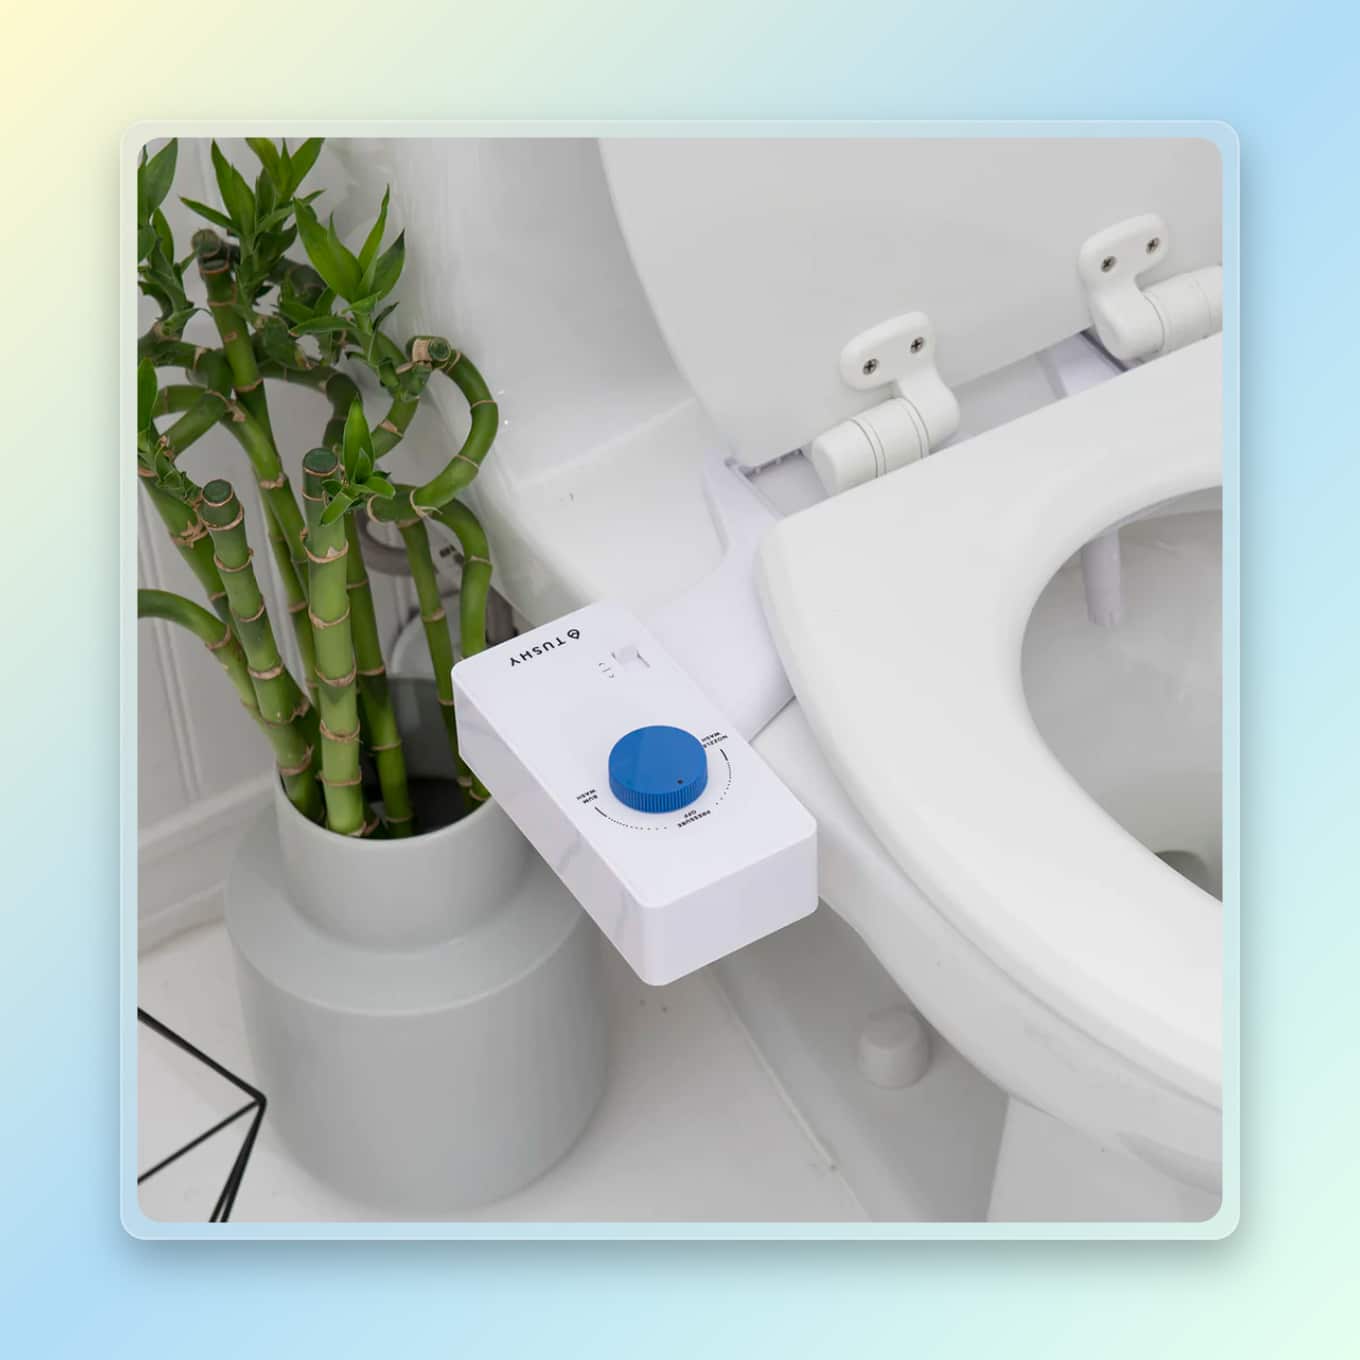 Tushy bidet installed on toilet